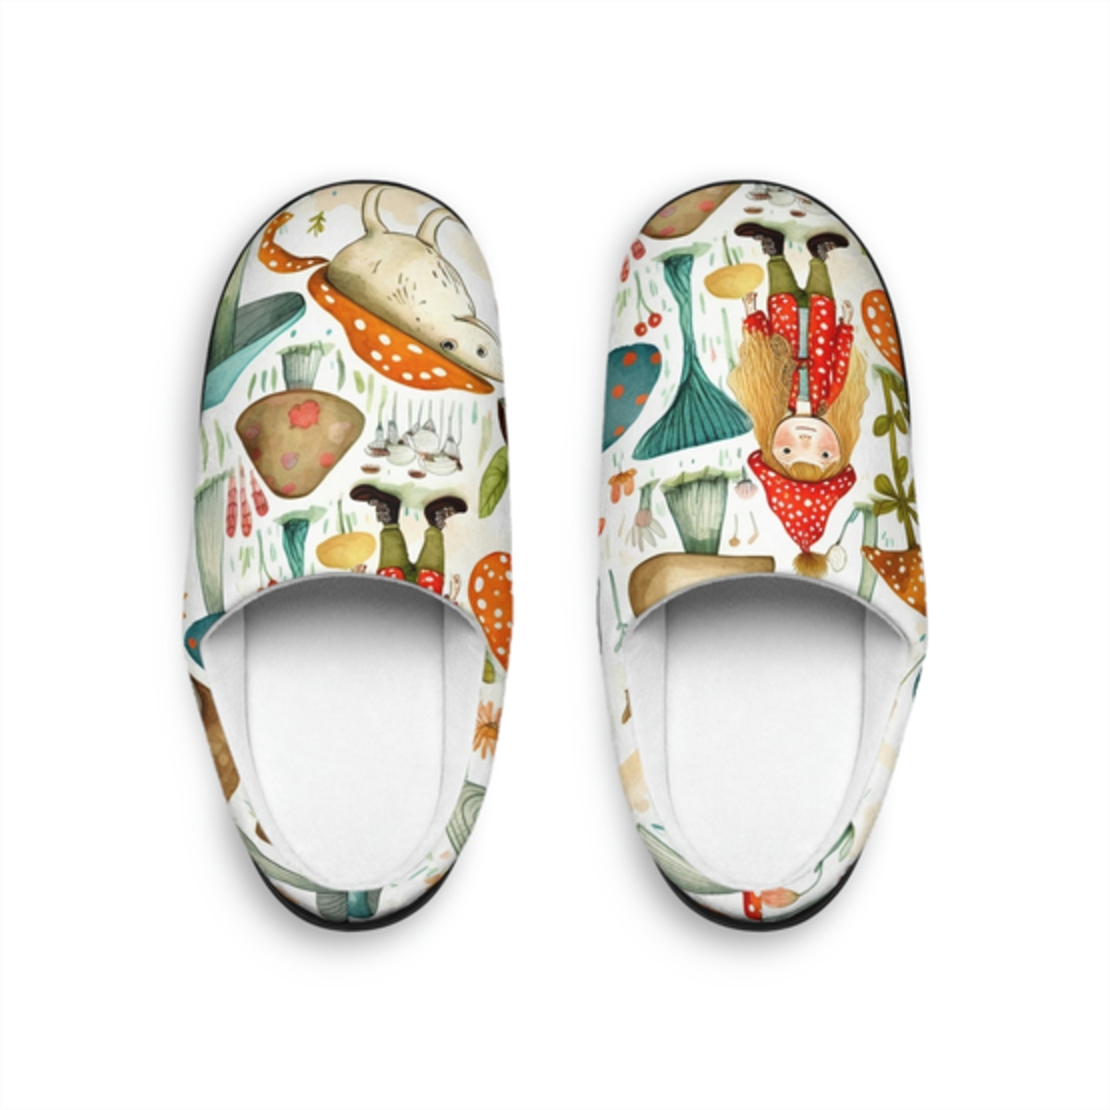 Women's Indoor Cozy Slippers - Mushroom Design - Handmade Woolen Shoes